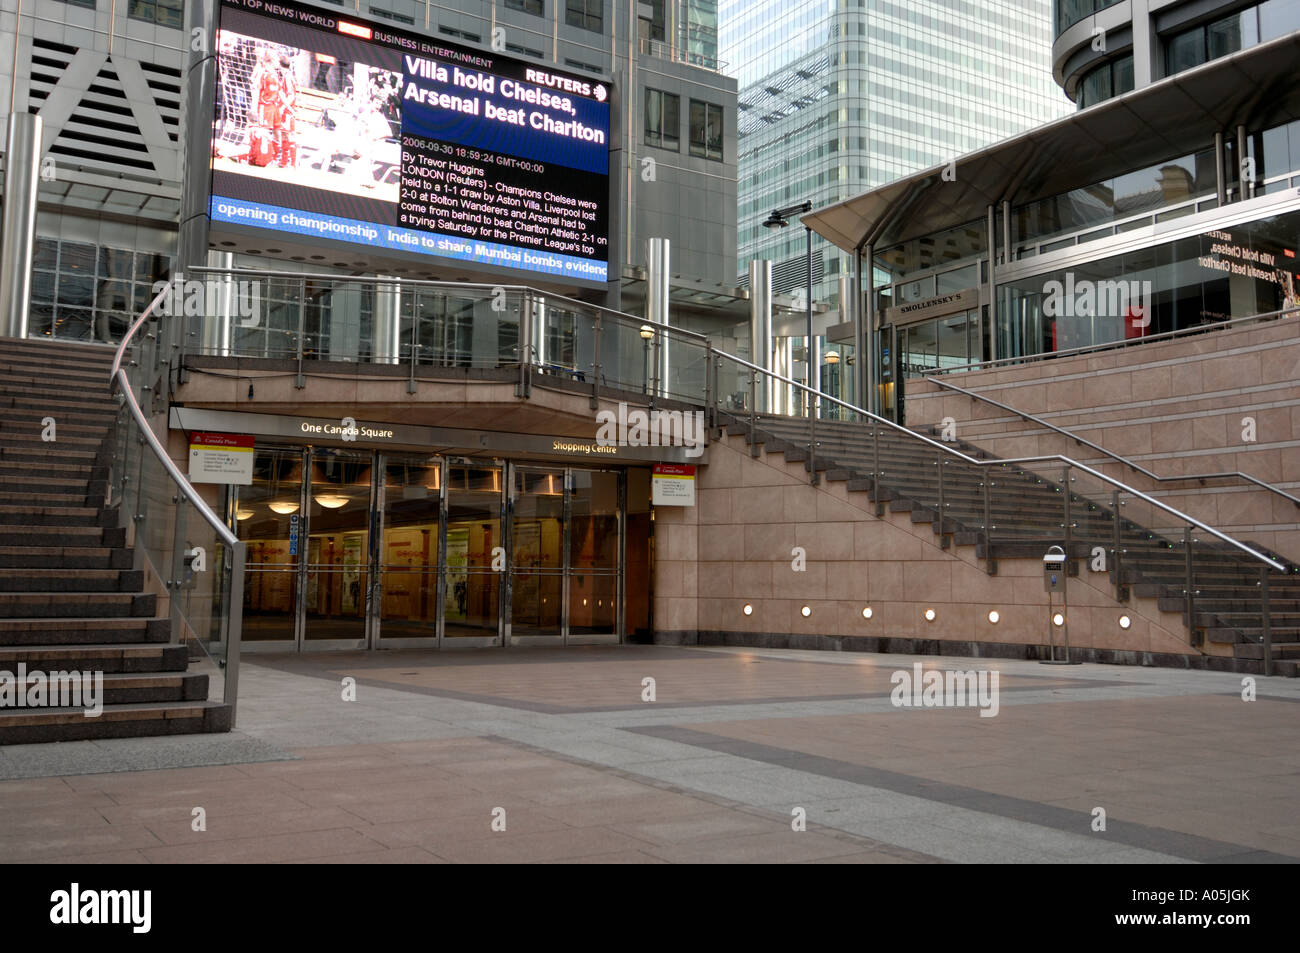 Reuters Plaza, Canary Wharf, London Stock Photo